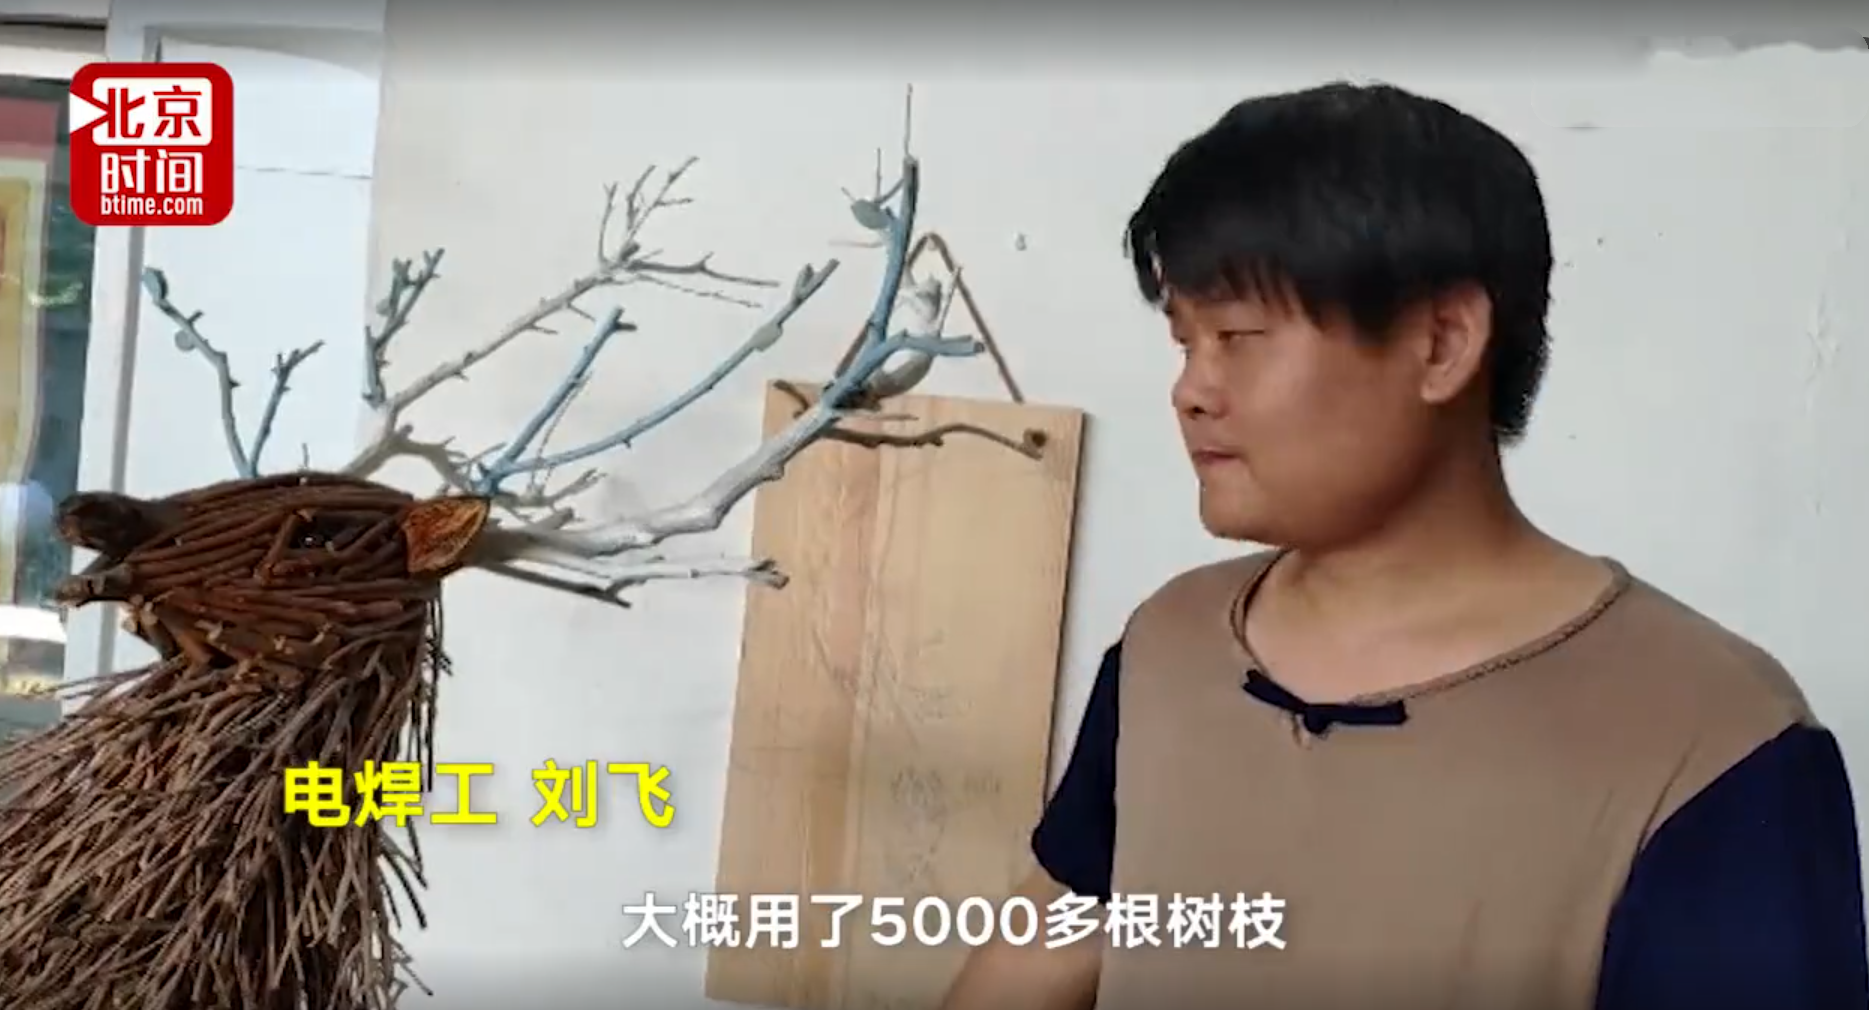 刘飞和他做的树枝梅花鹿。@北京时间 微博视频截图